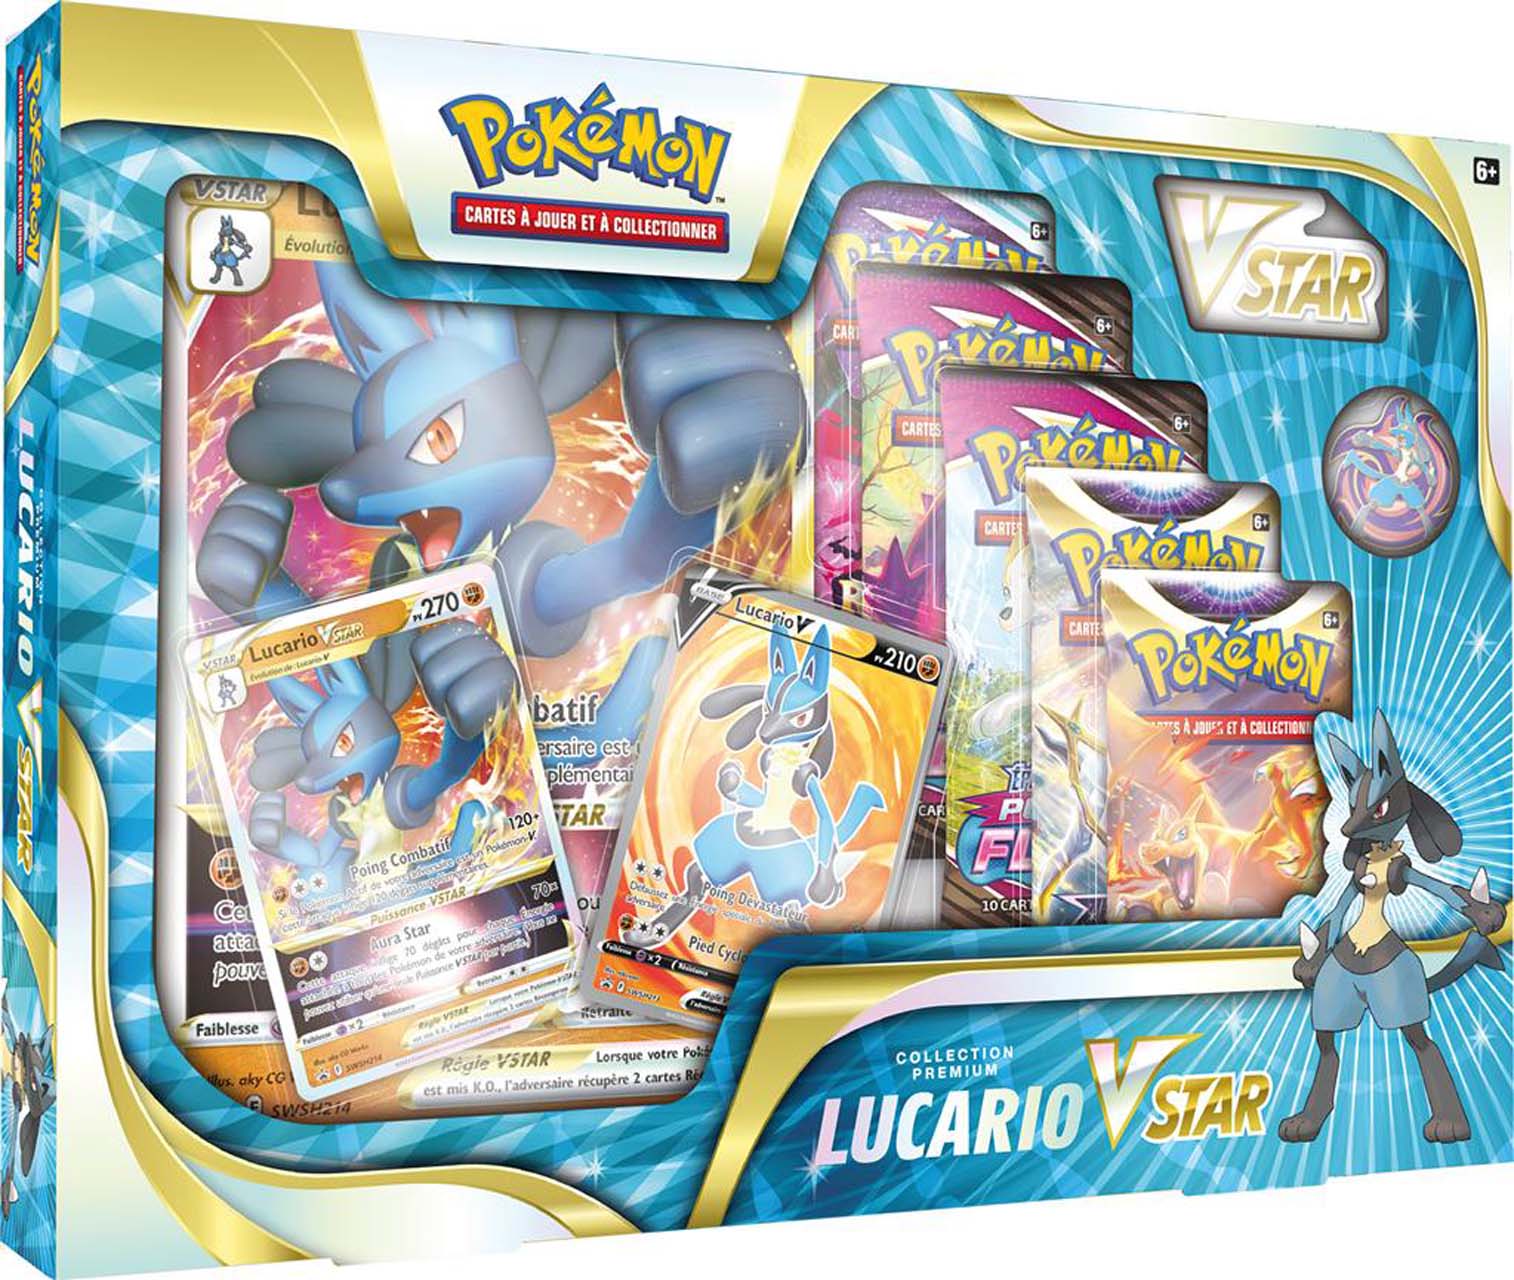 Tapis de jeu Pokemon avec Pikachu x Lucario - Jeu de carte deck